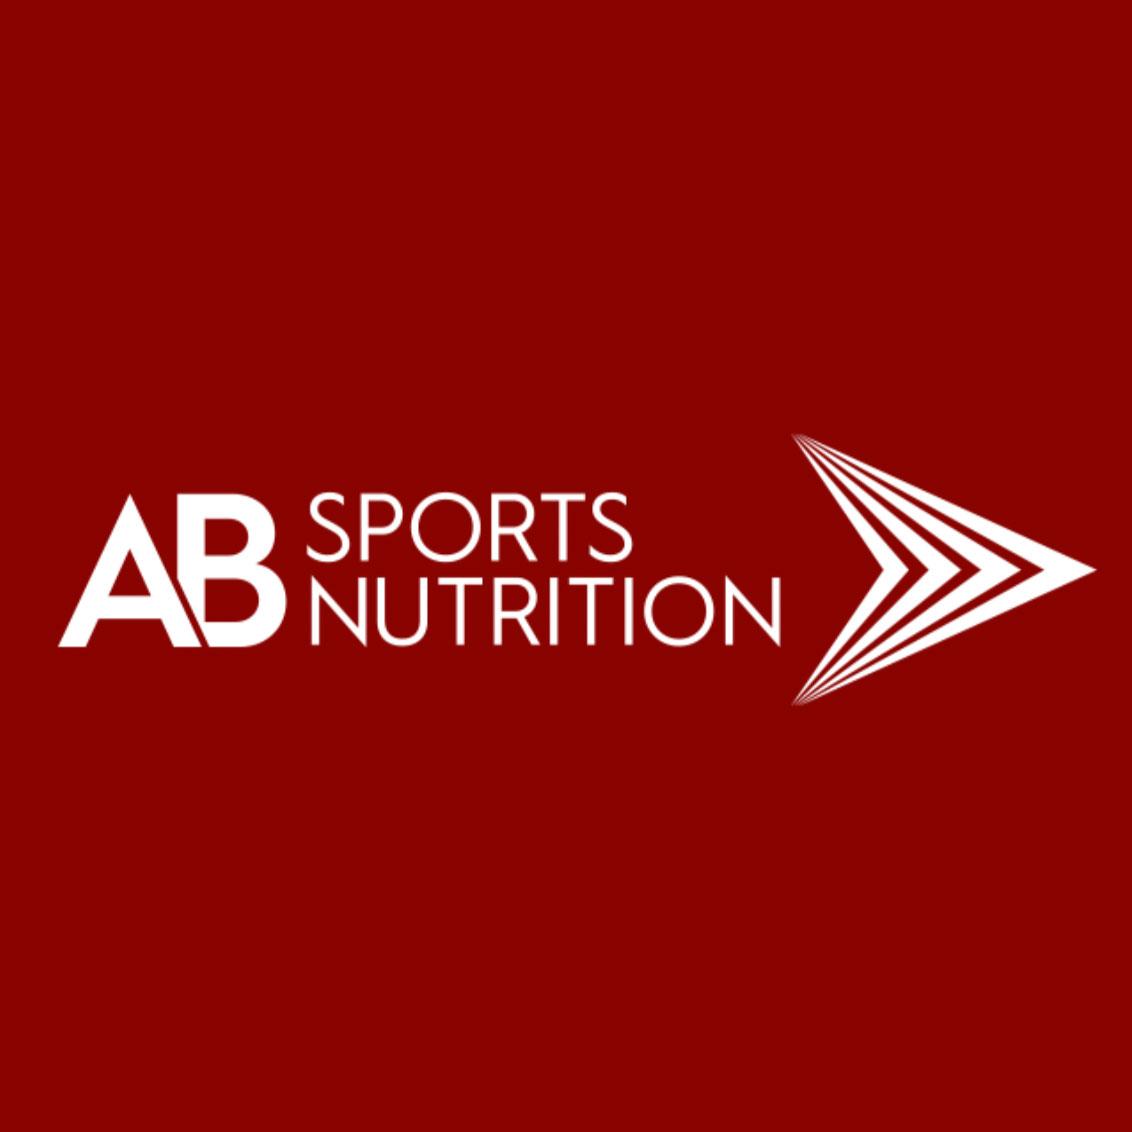 Marketing team - AB Sports Nutrition